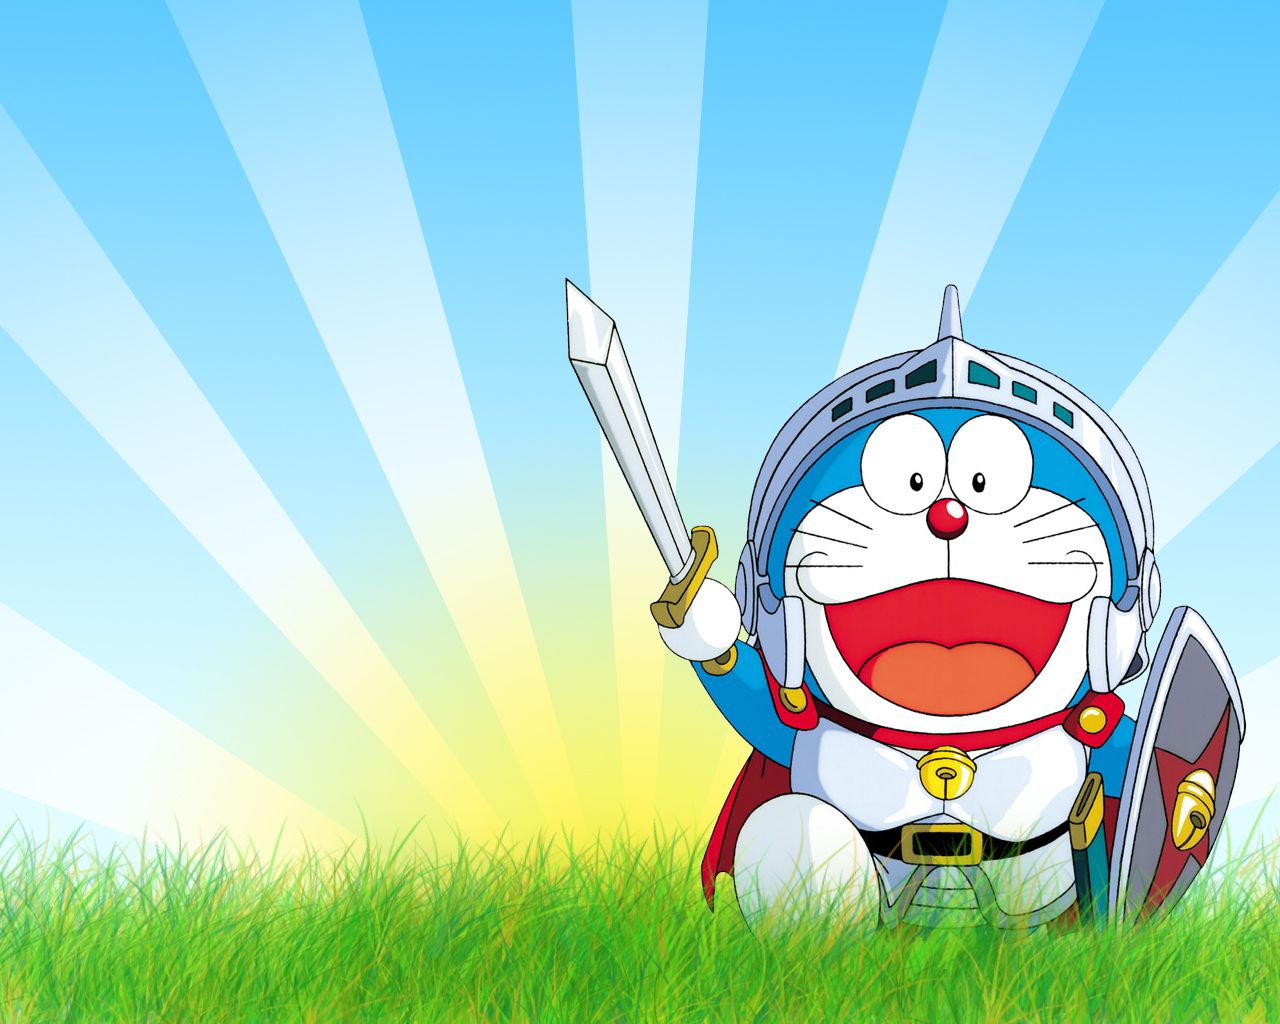 Doraemon hình ảnh/pictures: Doraemon là một trong những nhân vật hoạt hình được yêu thích nhất trên thế giới, và trong bộ sưu tập hình ảnh của chúng tôi, bạn sẽ tìm thấy những bức tranh minh họa đầy màu sắc và sinh động. Hãy khám phá thế giới kỳ diệu của Doraemon và tận hưởng trải nghiệm trực quan hơn với hình ảnh tuyệt đẹp này!